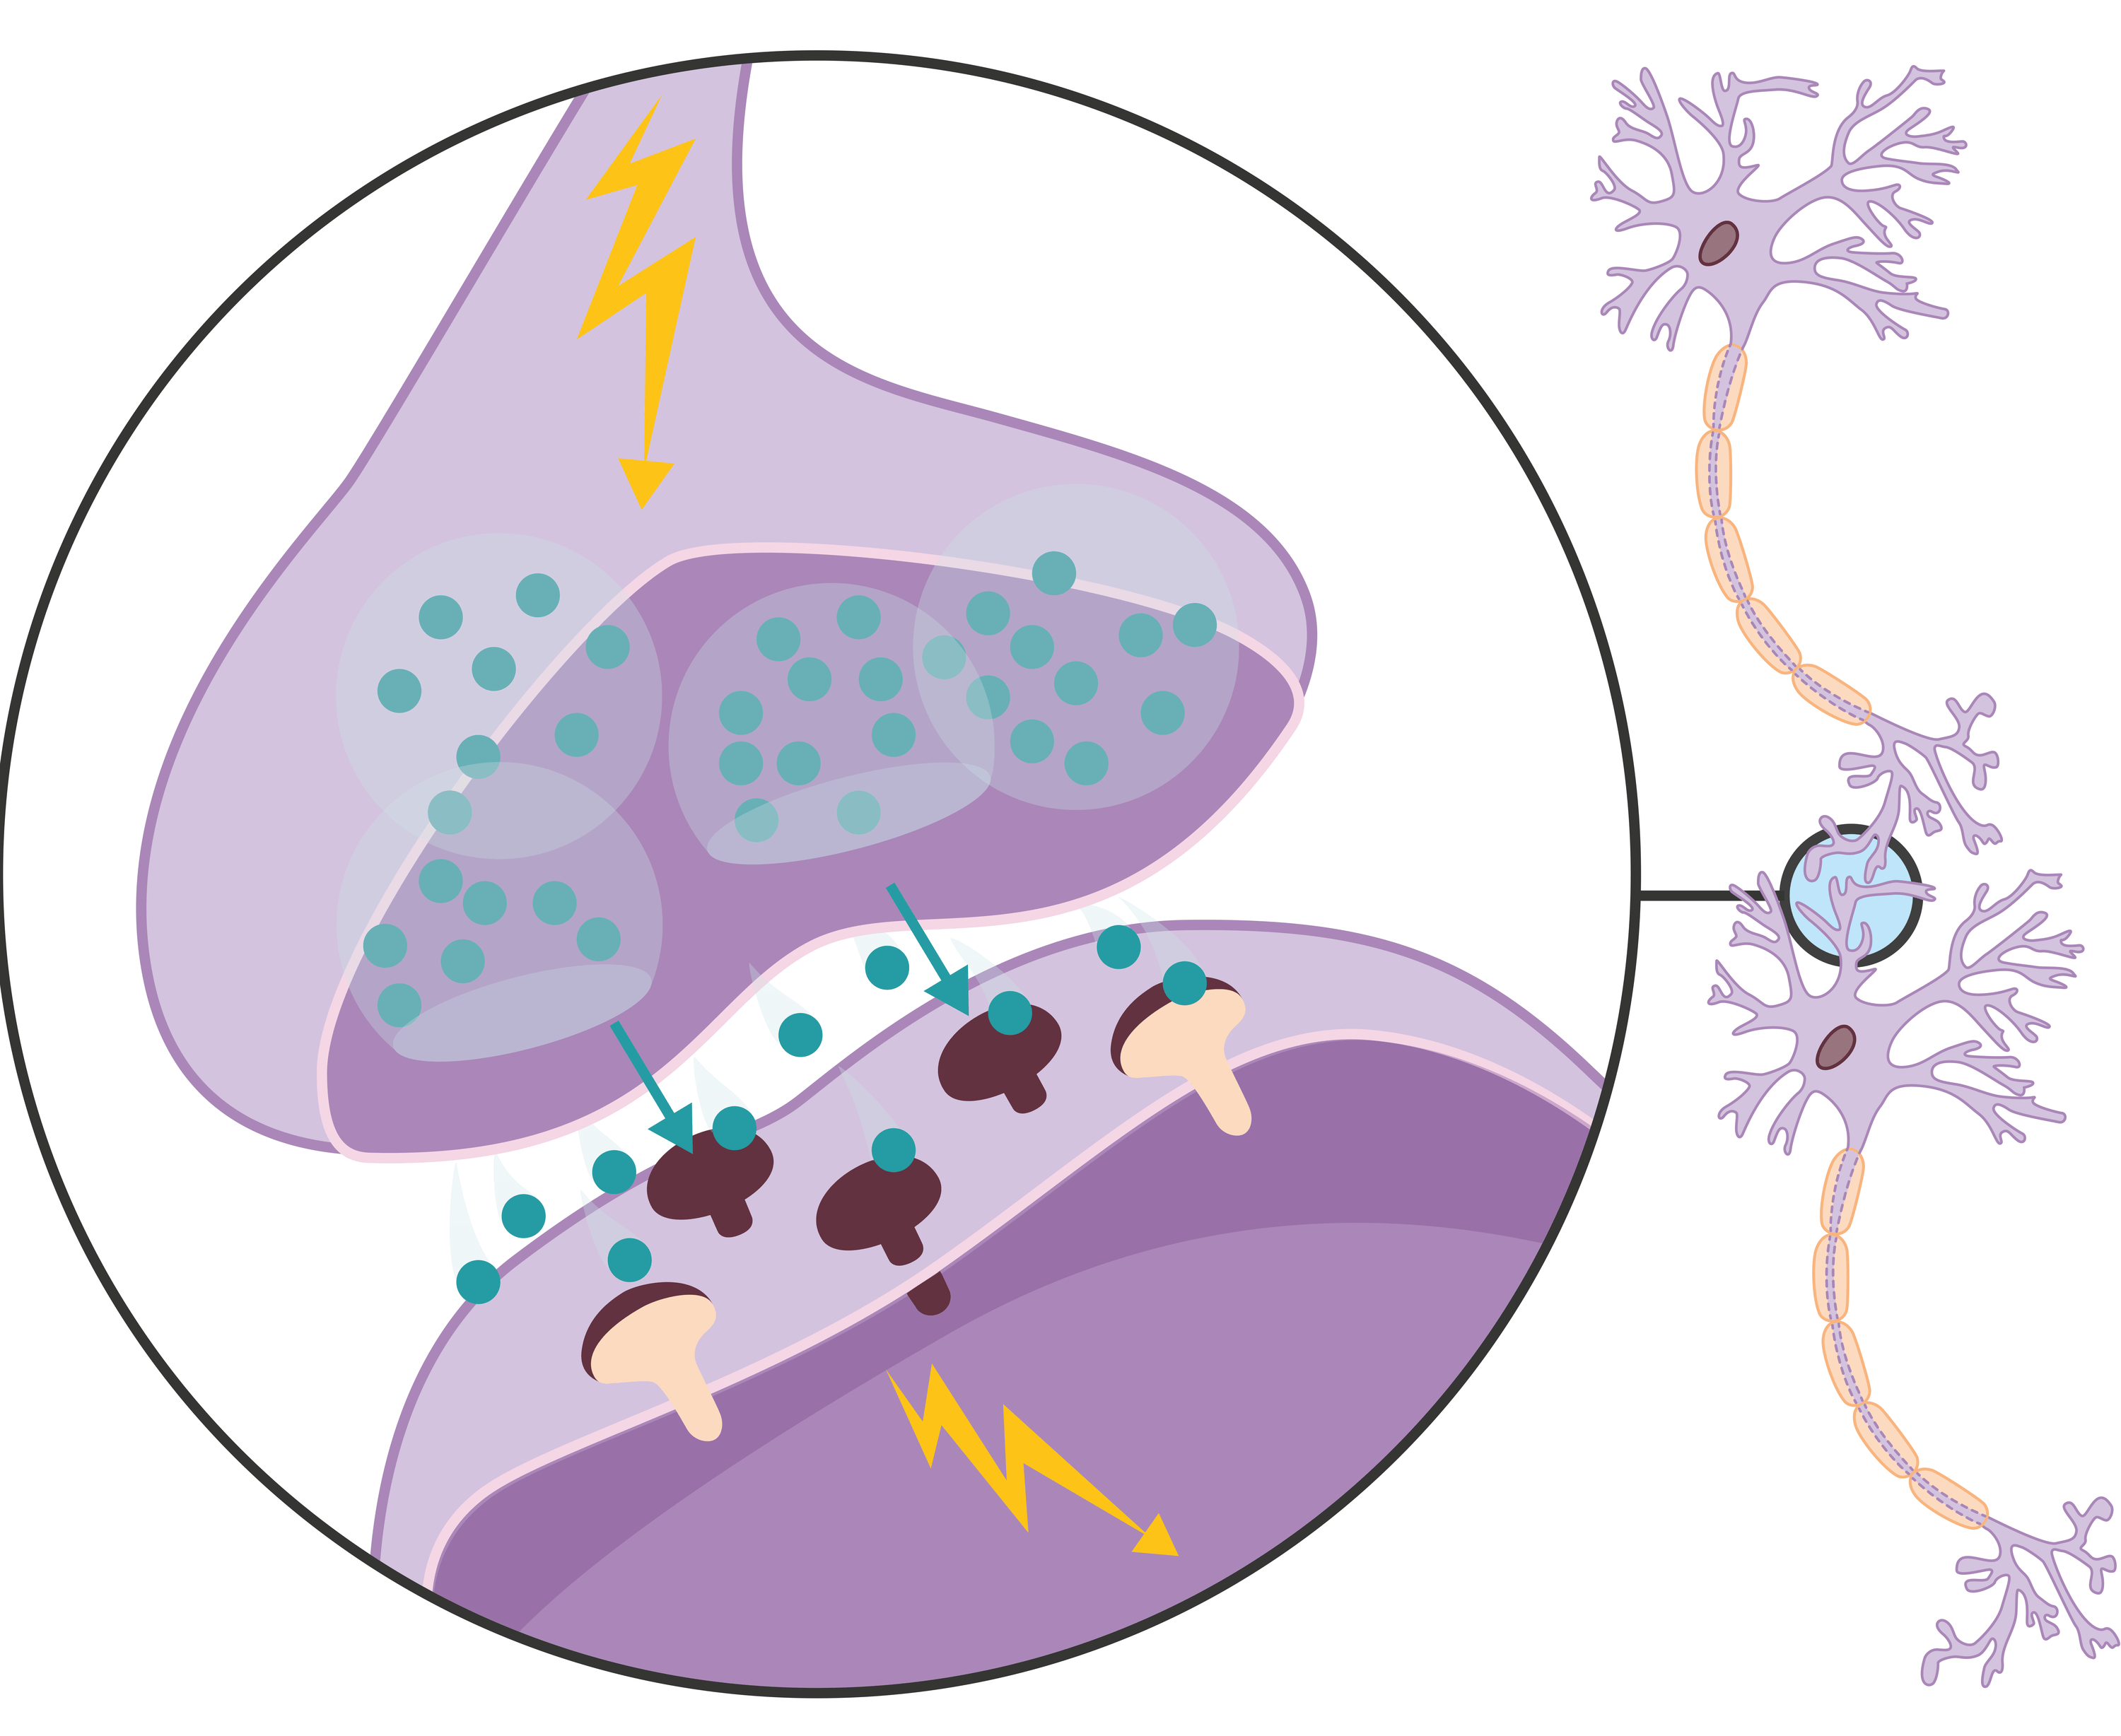 Nerveux svt synapse neurones fonctionnement neurotransmetteur systeme transmis sont cycle